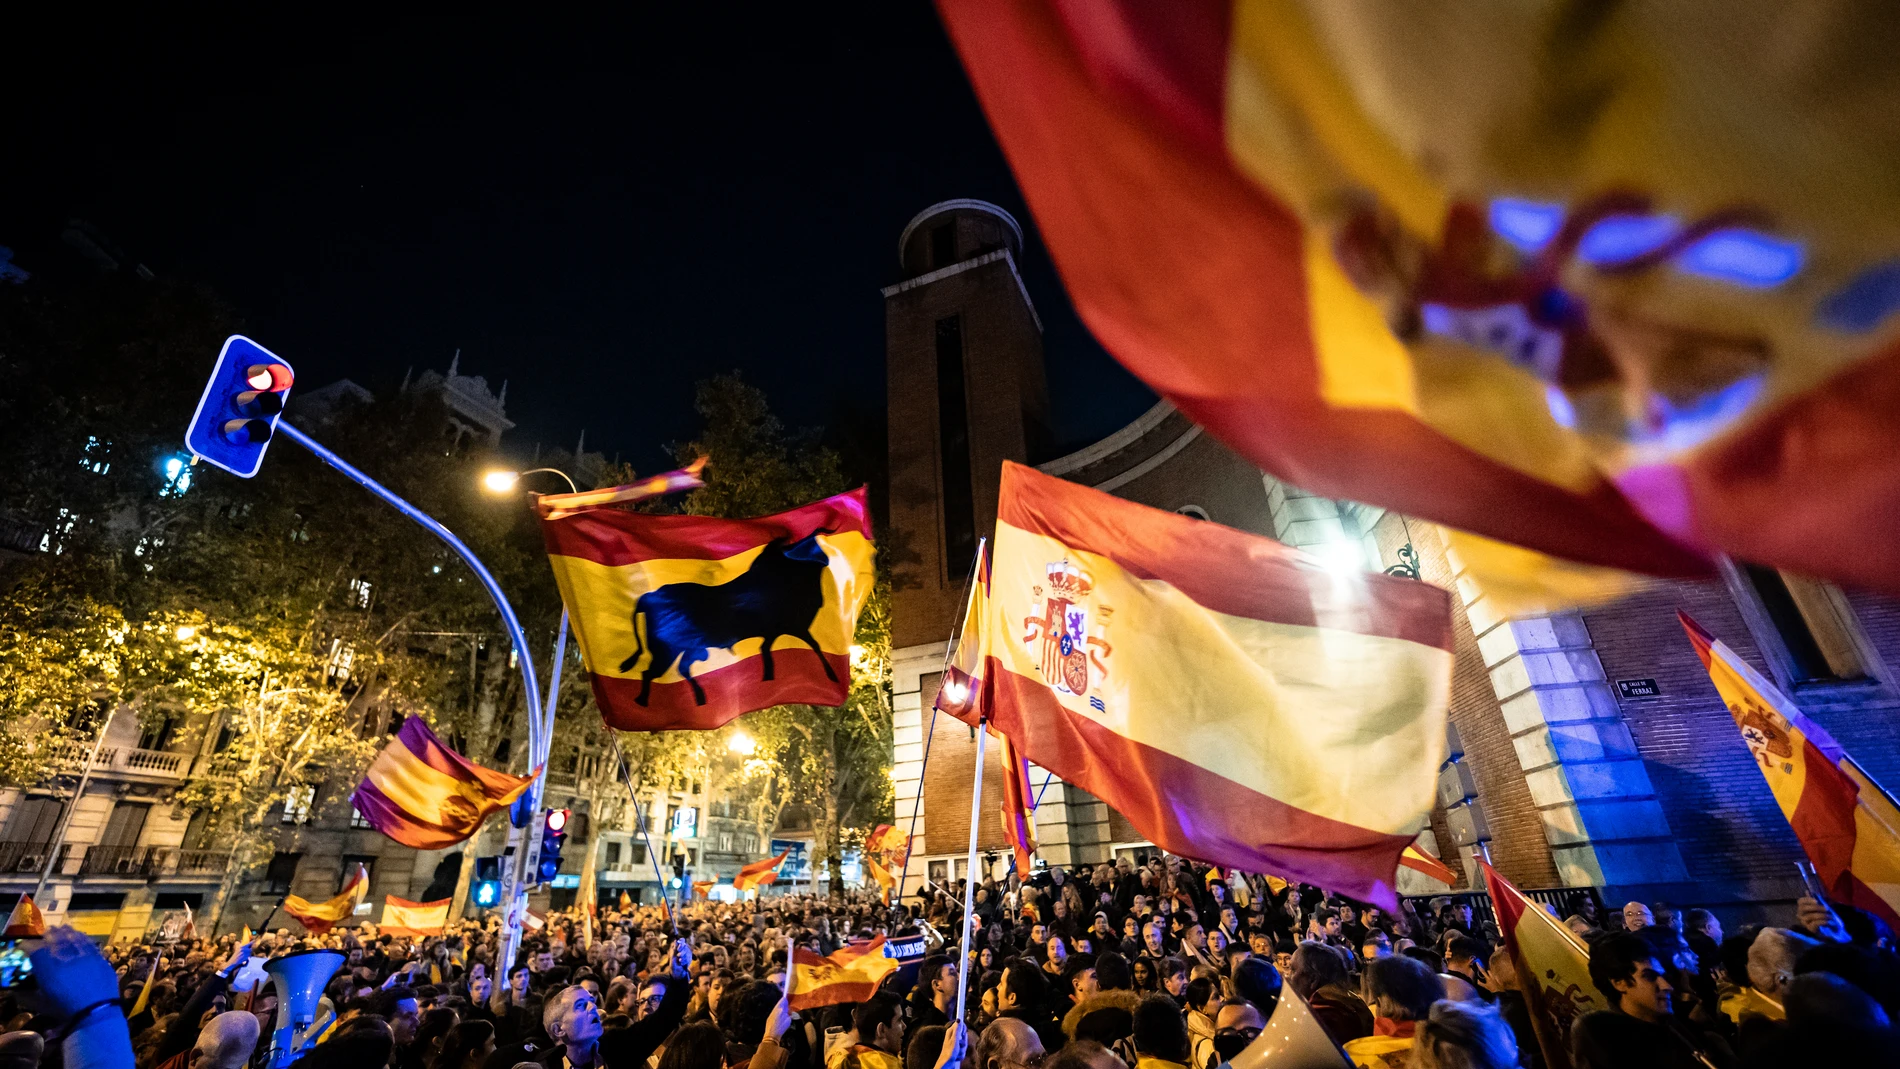 MADRID.-Termina la duodécima noche de manifestaciones en Ferraz sin incidentes reseñables y con un fuerte dispositivo policial